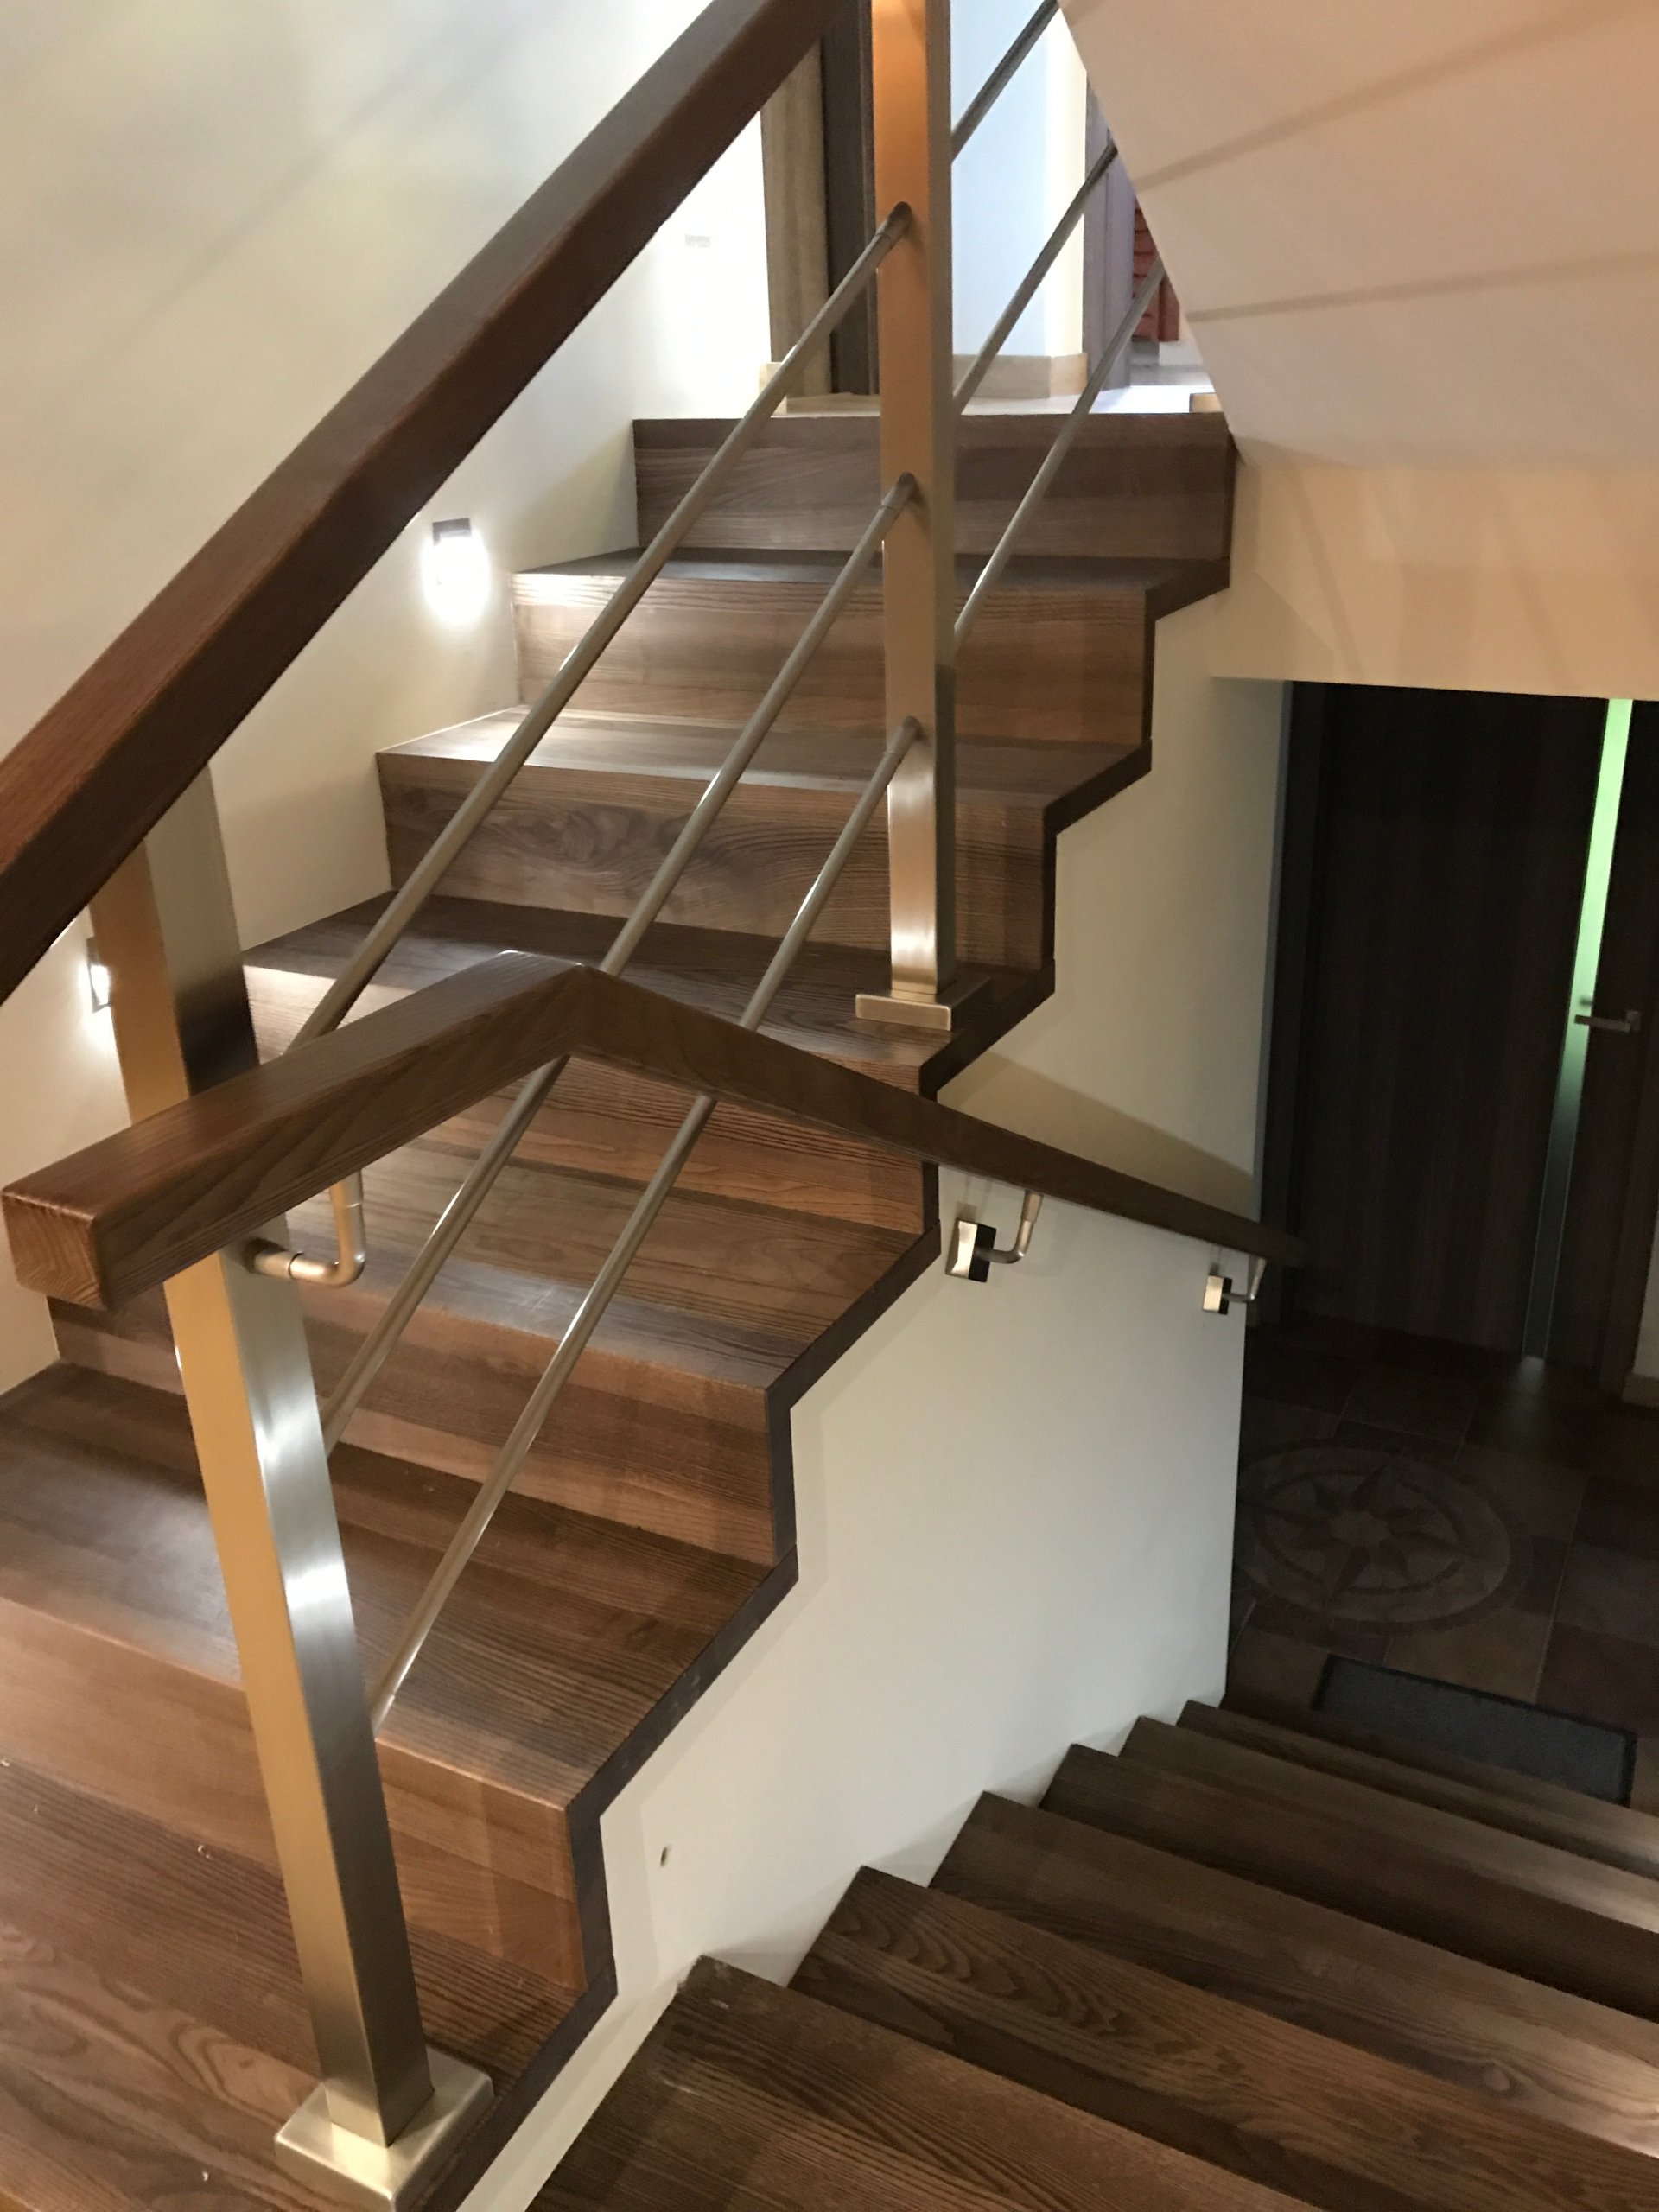 schody-dywanowe-drewniane-producent-7830427332-oficjalne